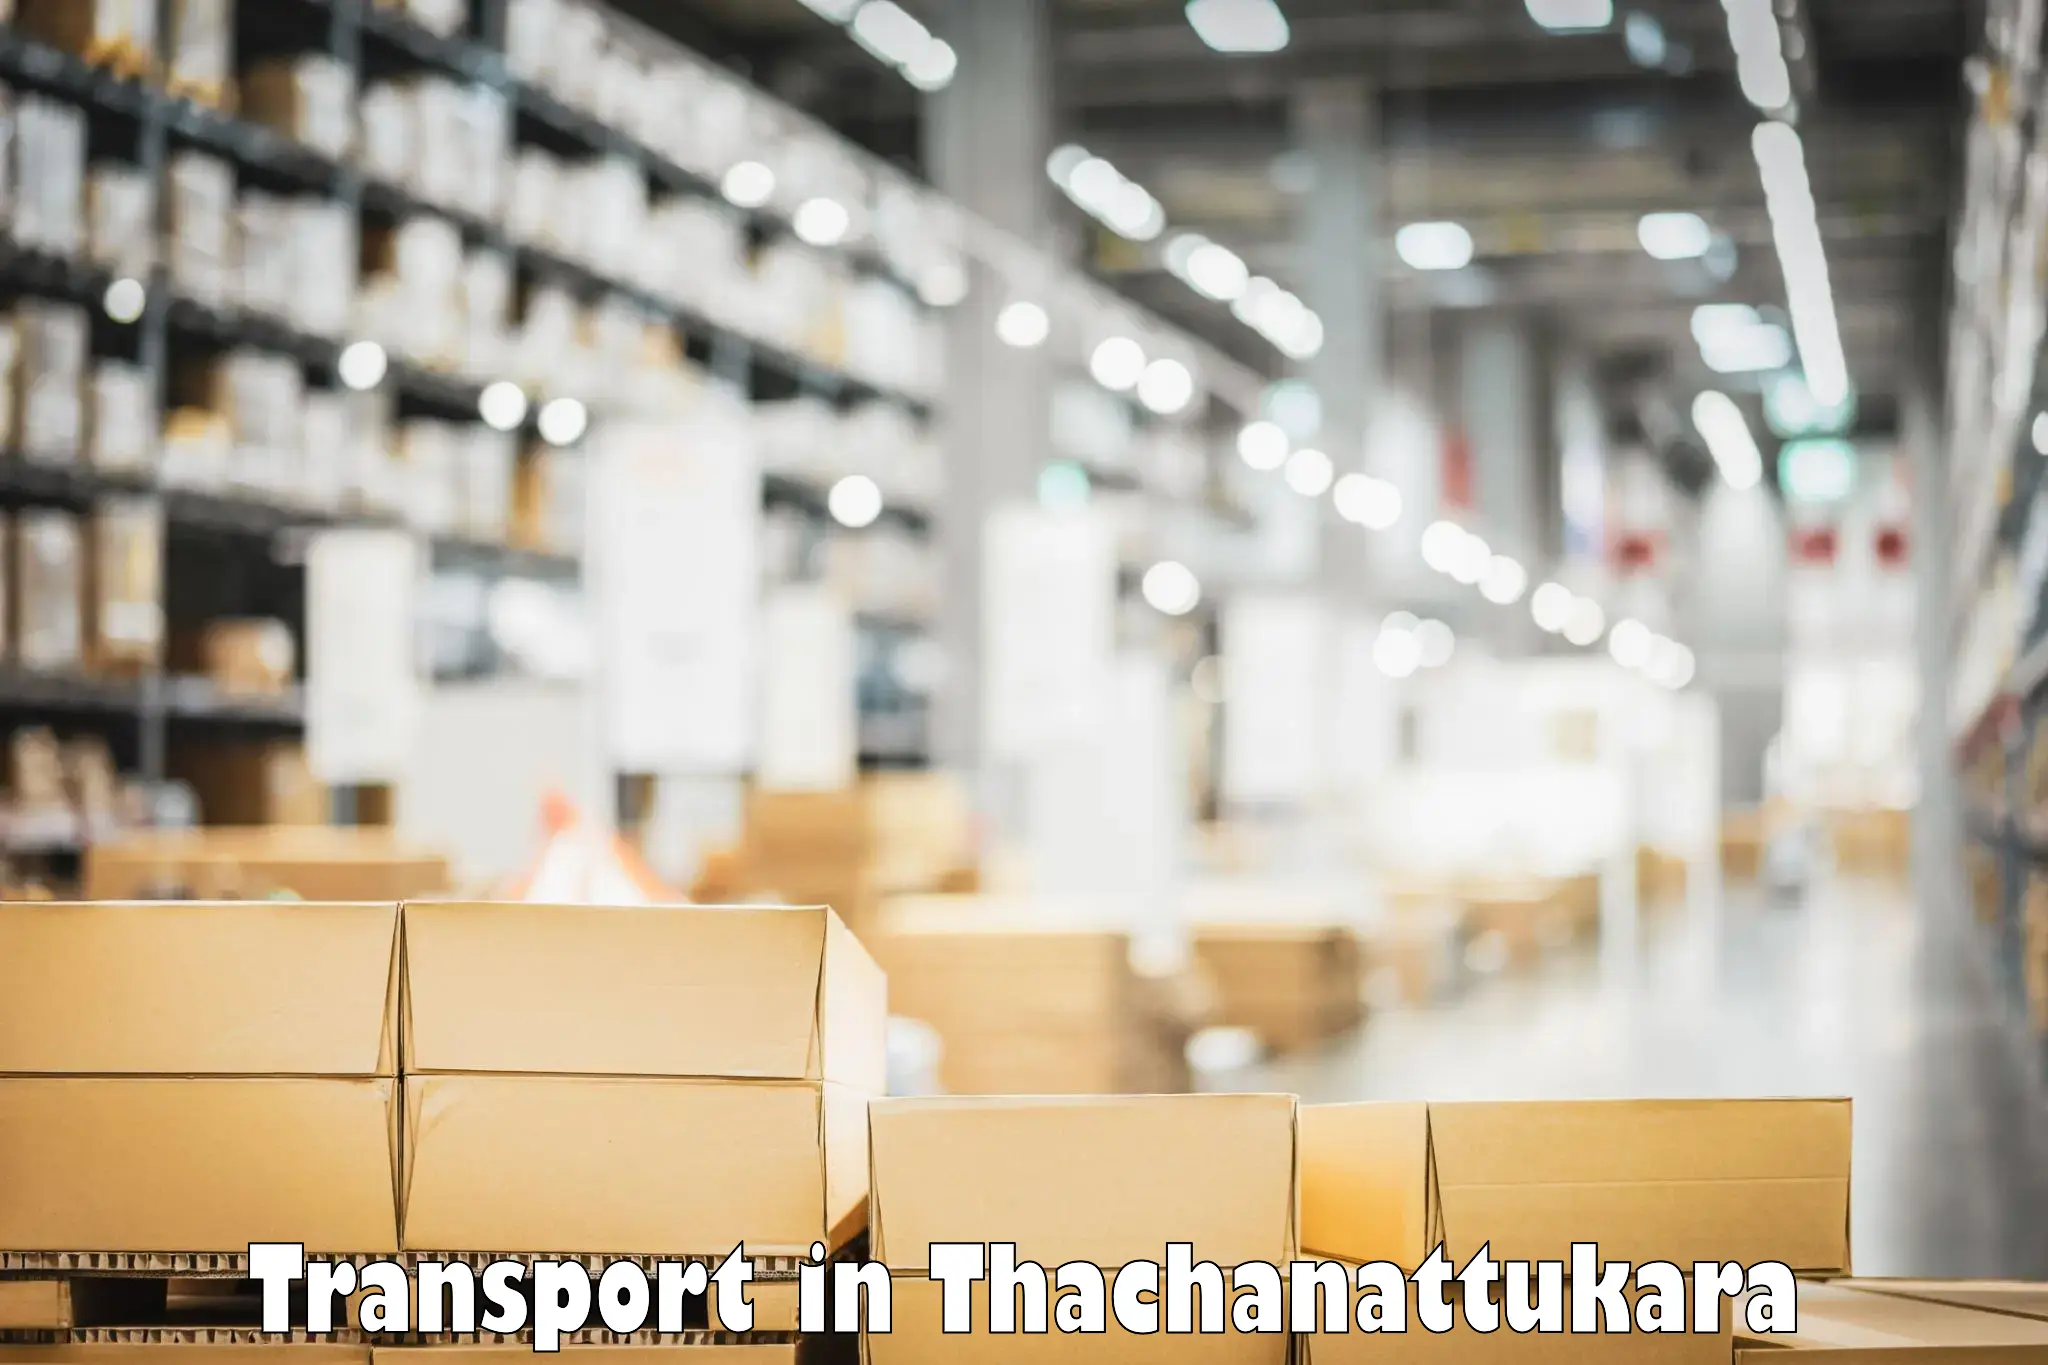 Transport in sharing in Thachanattukara